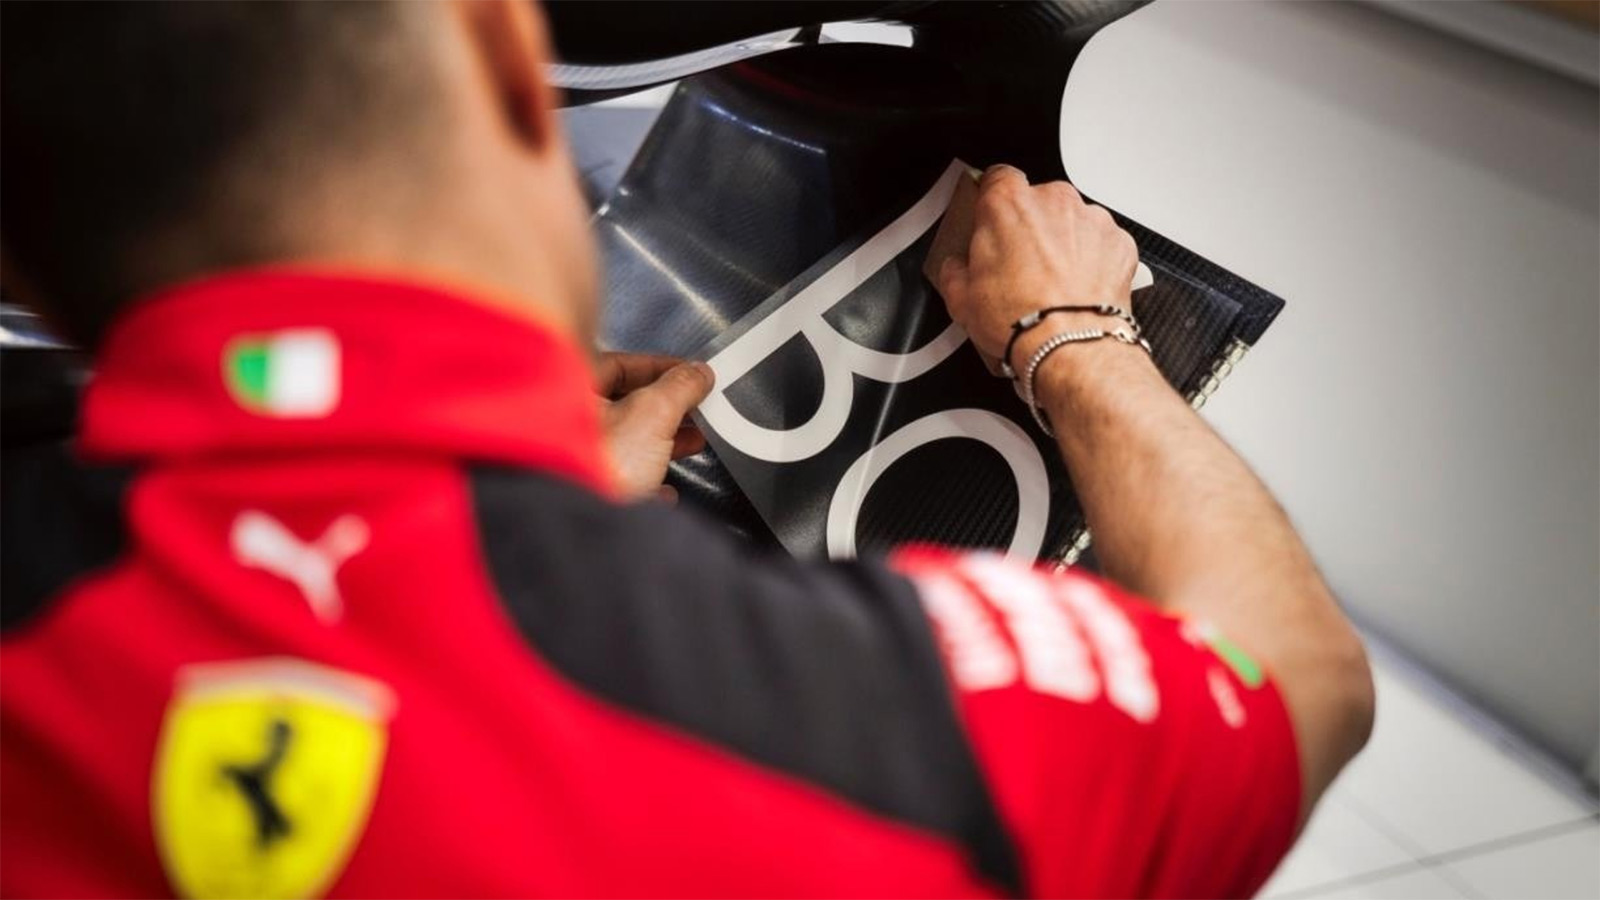 Bang & Olufsen and Scuderia Ferrari